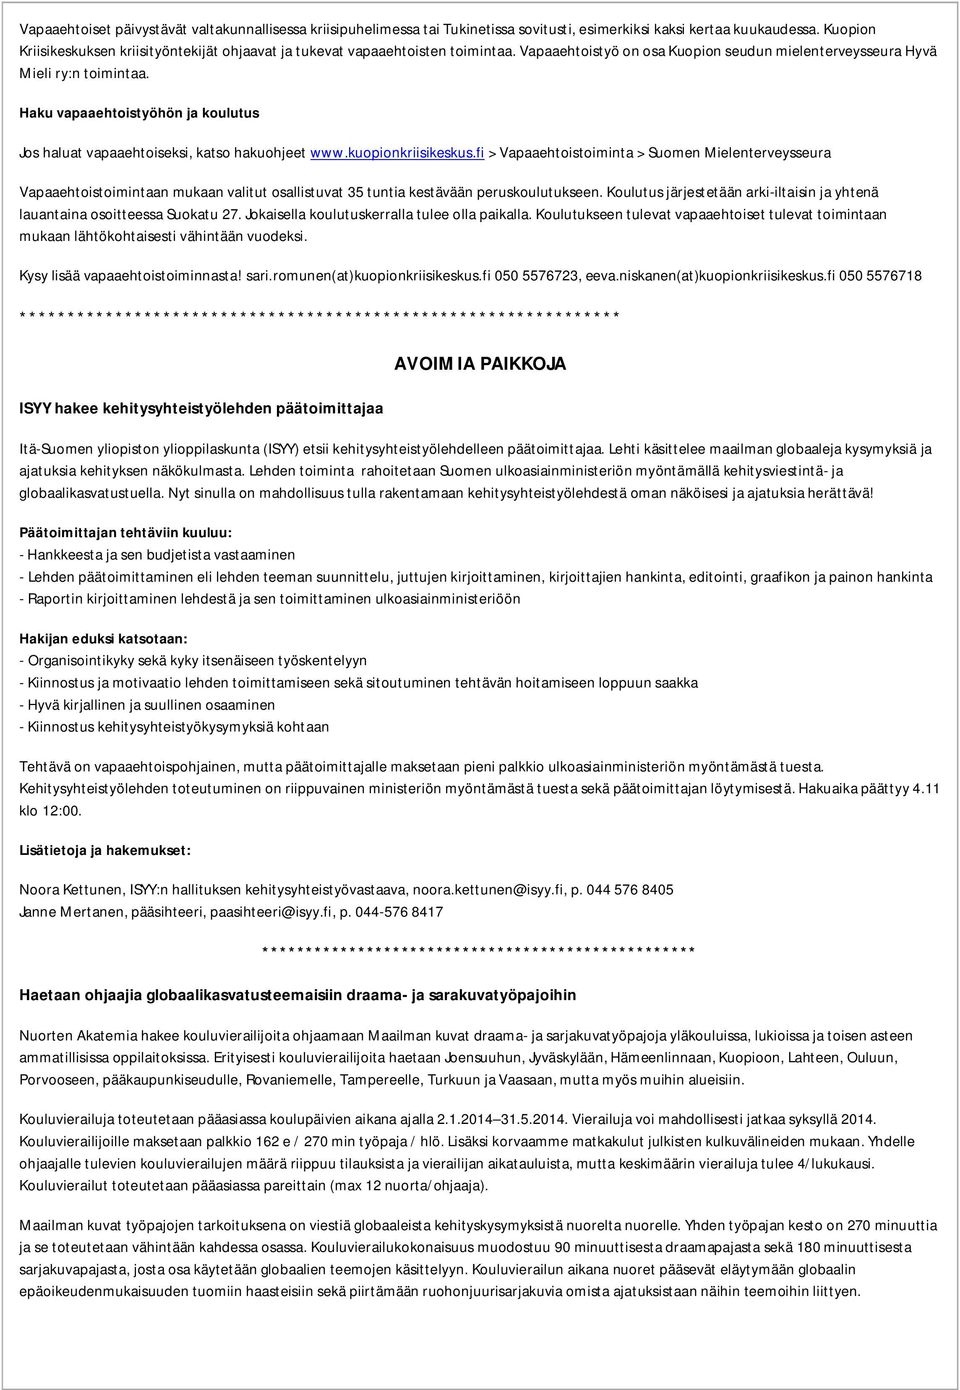 Haku vapaaehtoistyöhön ja koulutus Jos haluat vapaaehtoiseksi, katso hakuohjeet www.kuopionkriisikeskus.